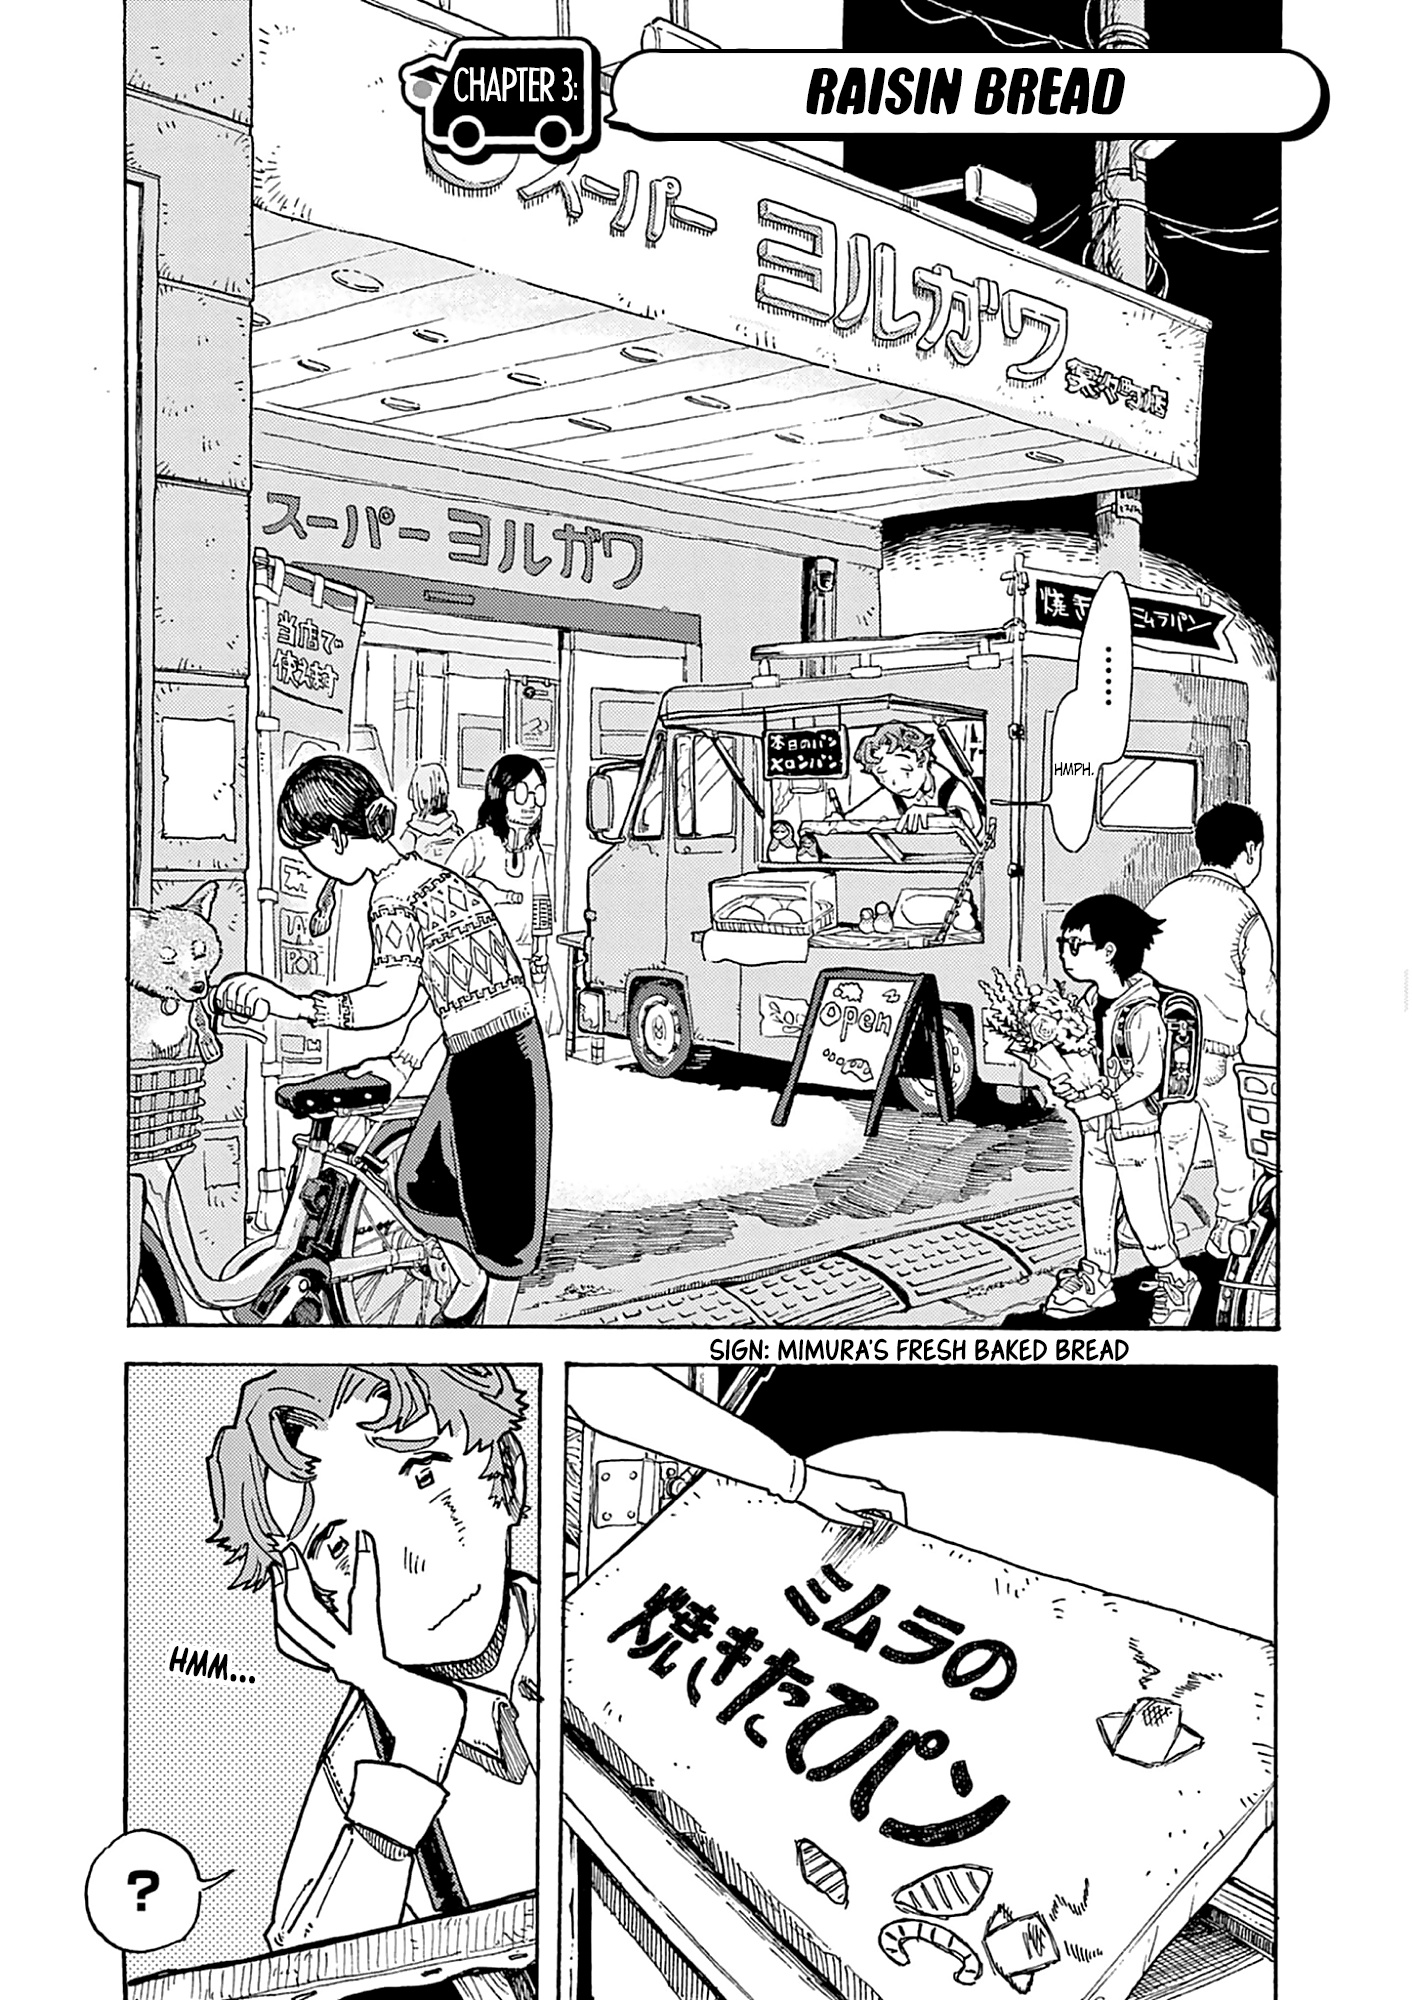 Kurukuru Kuruma Mimura Pan Vol.1 Chapter 3: Raisin Bread - Picture 1